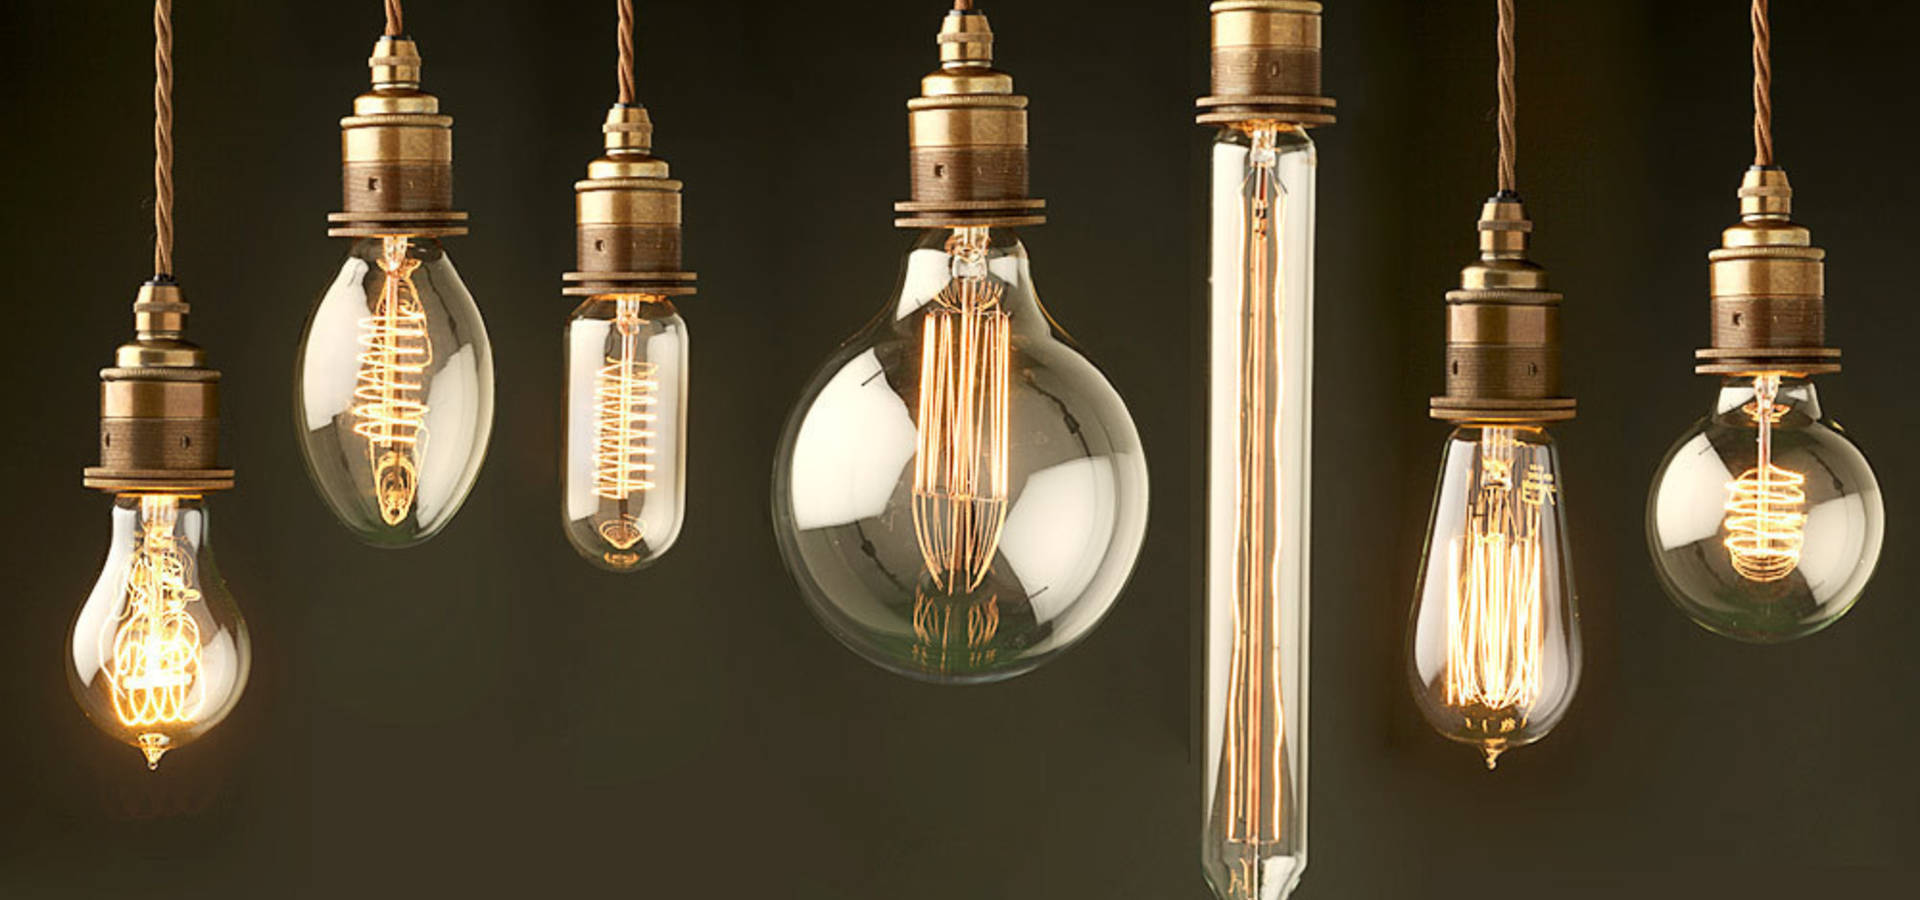 Ретро лампы Эдисона: советы по выбору и декору